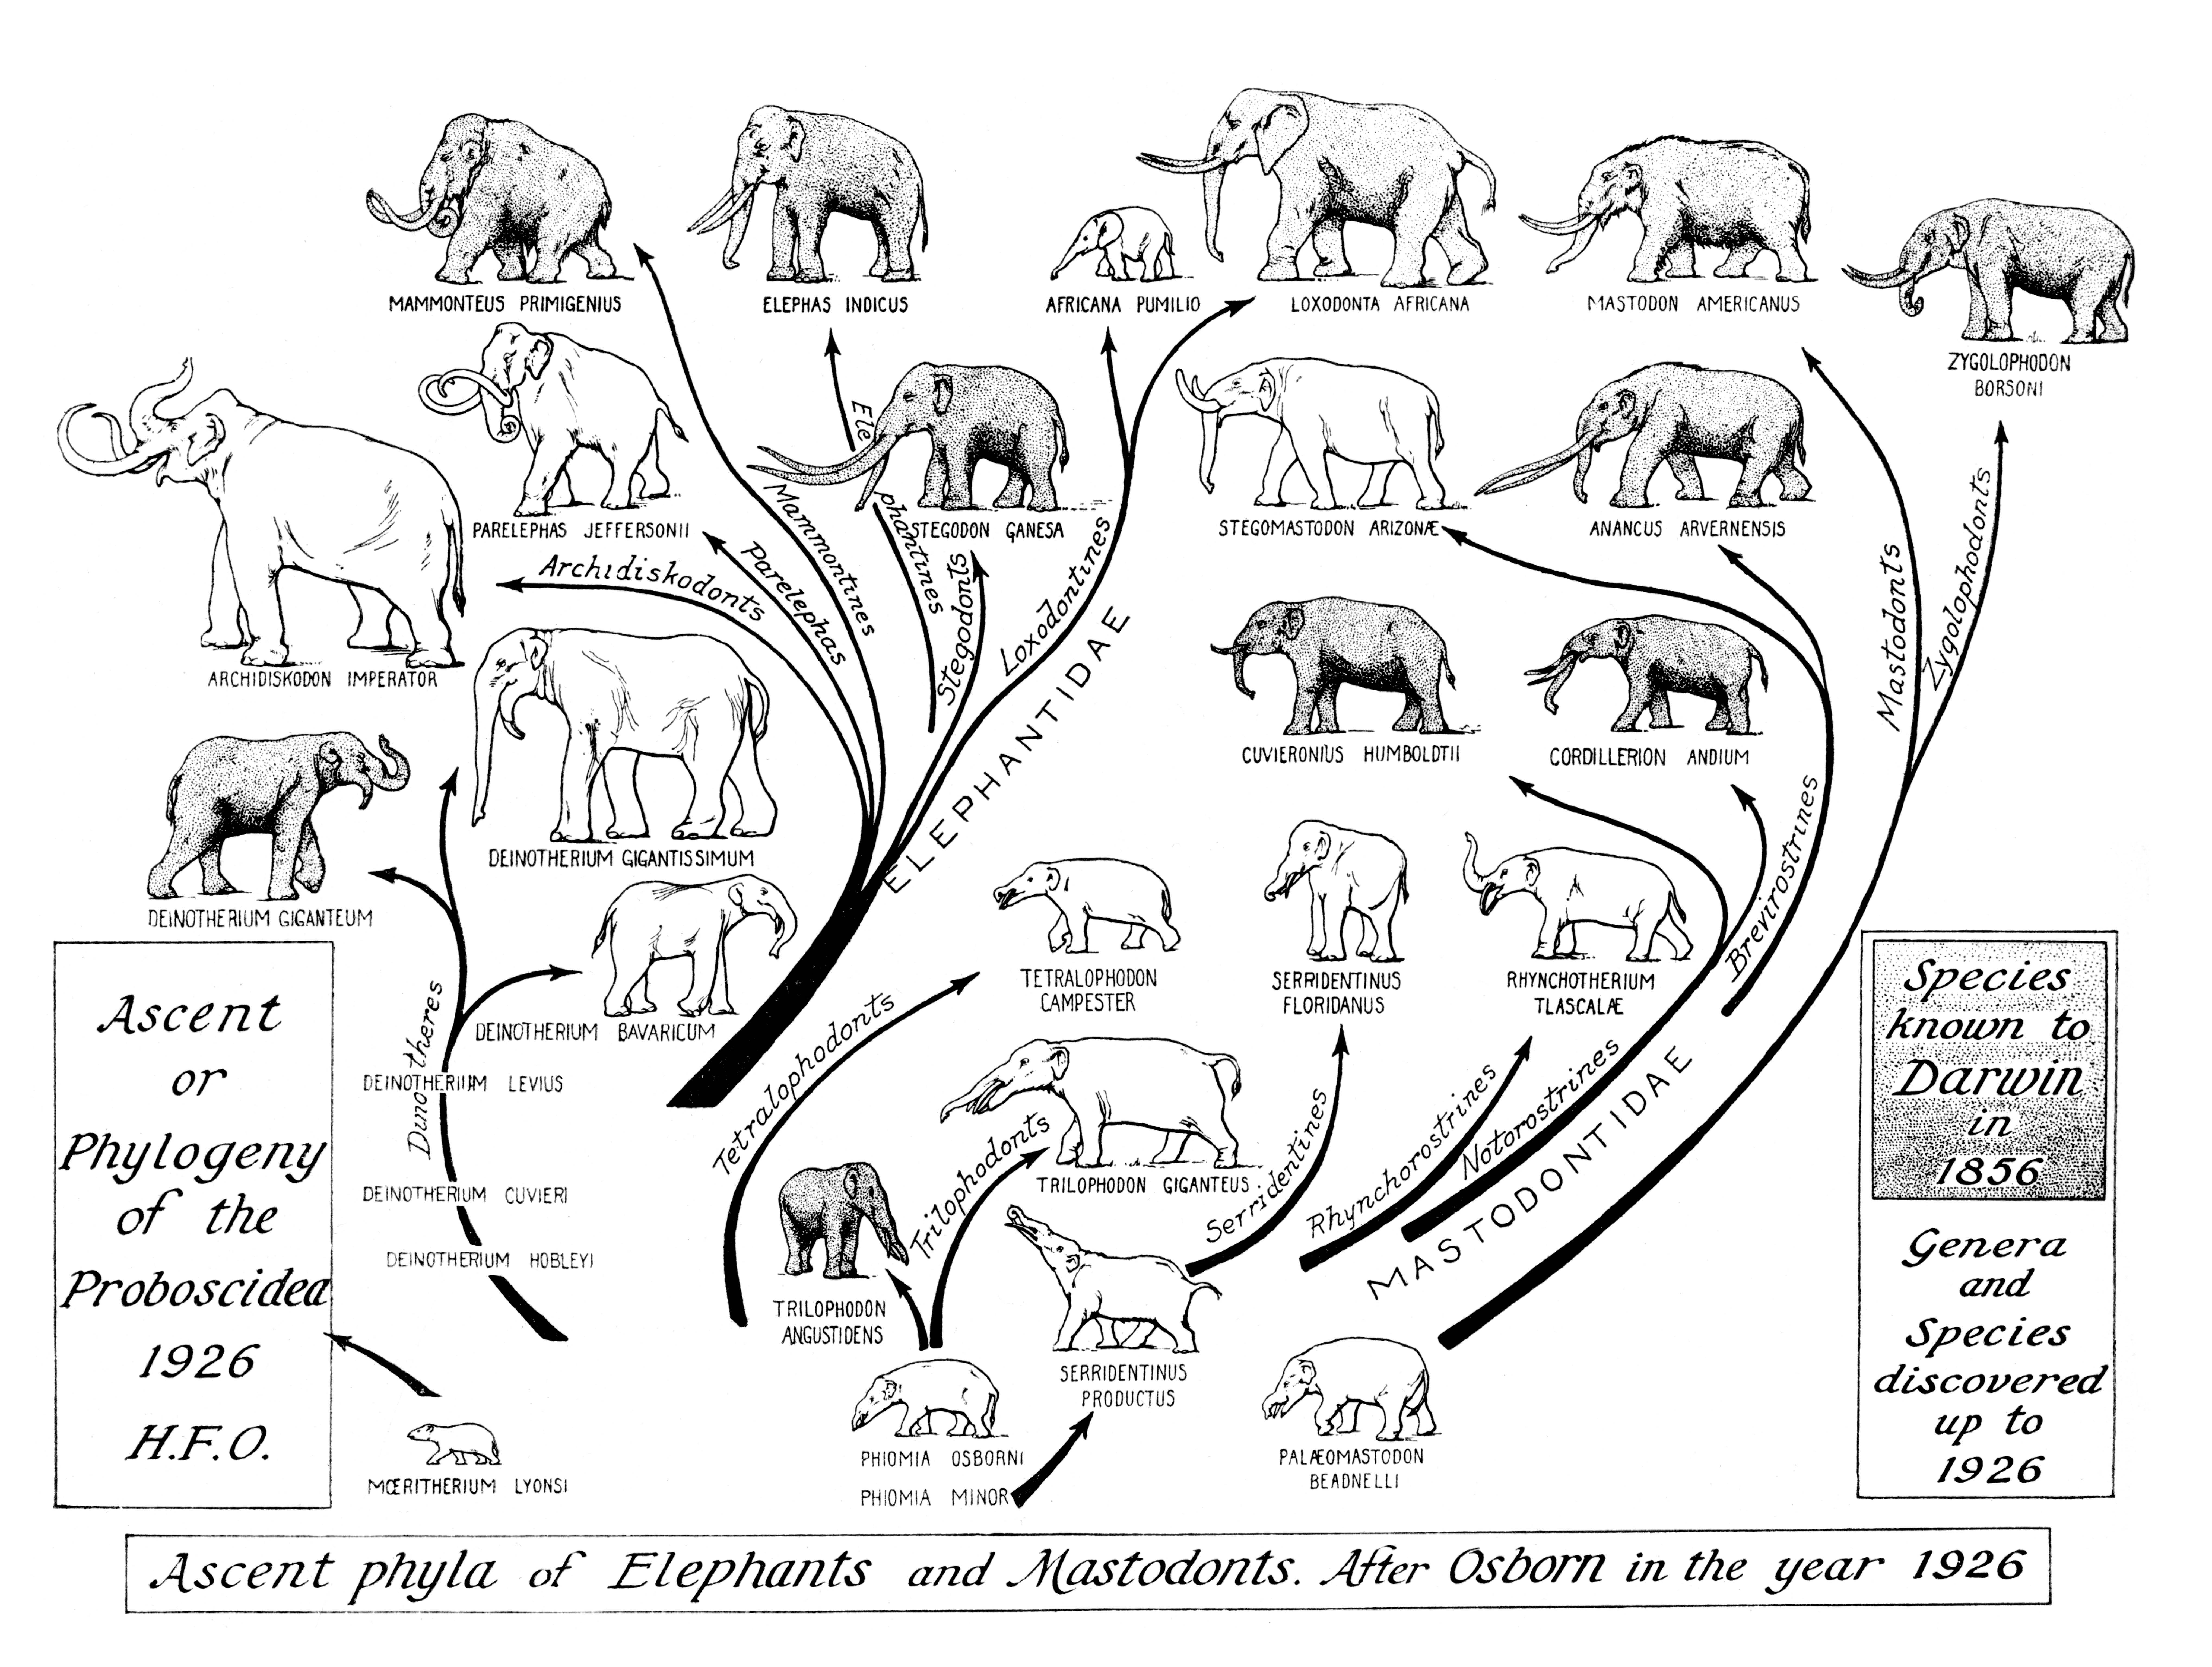 Примеры переходных форм и филогенетических рядов. Филогенетическое Древо слона. Эволюционное Древо хоботных. Филогенетическое Древо хищных млекопитающих. Филетическая Эволюция хоботных.